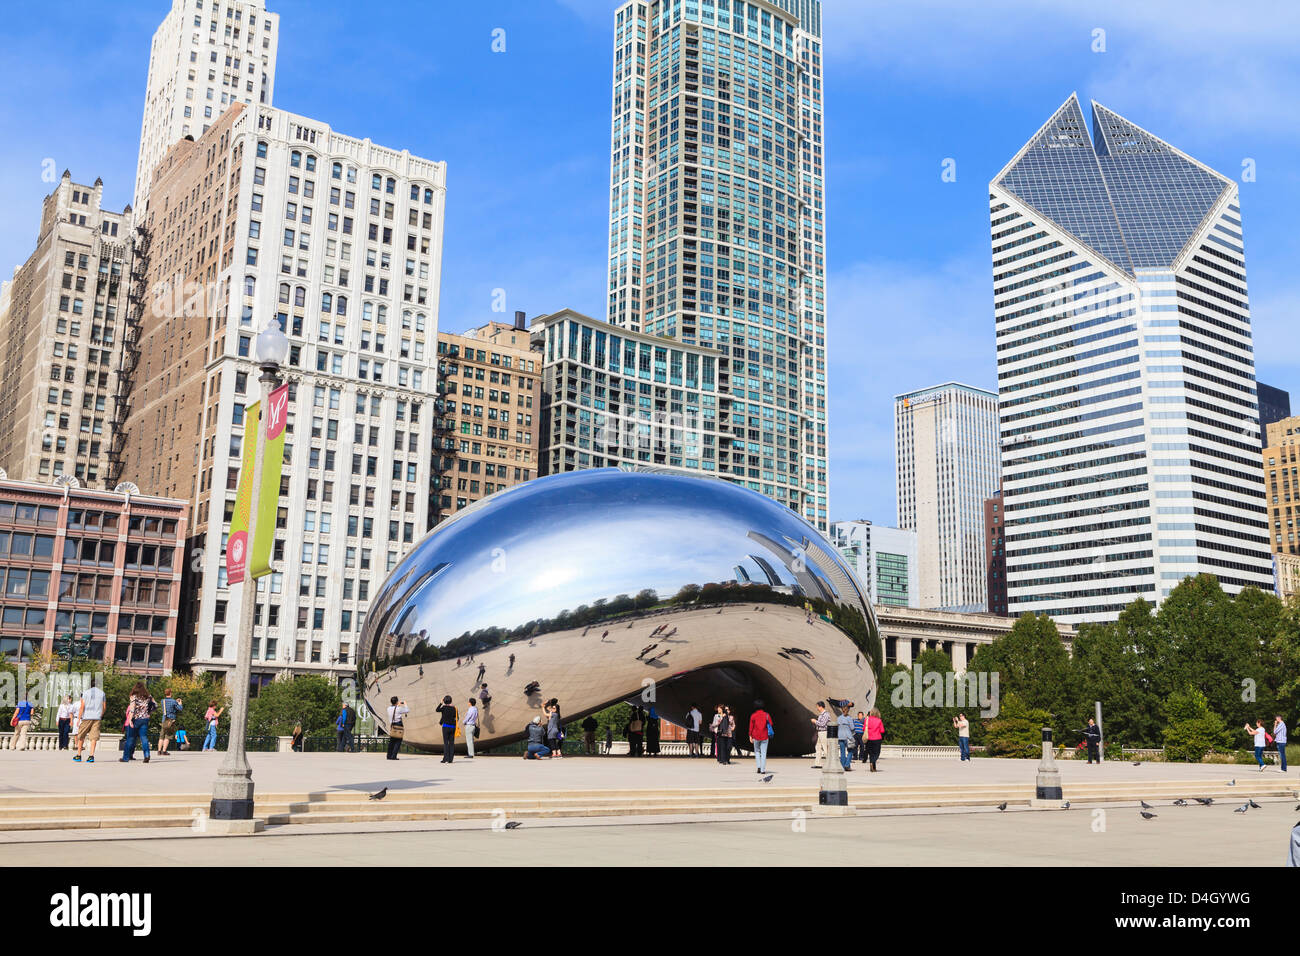 Parc du millénaire, la Cloud Gate sculpture en acier par Anish Kapoor, Chicago, Illinois, États-Unis Banque D'Images